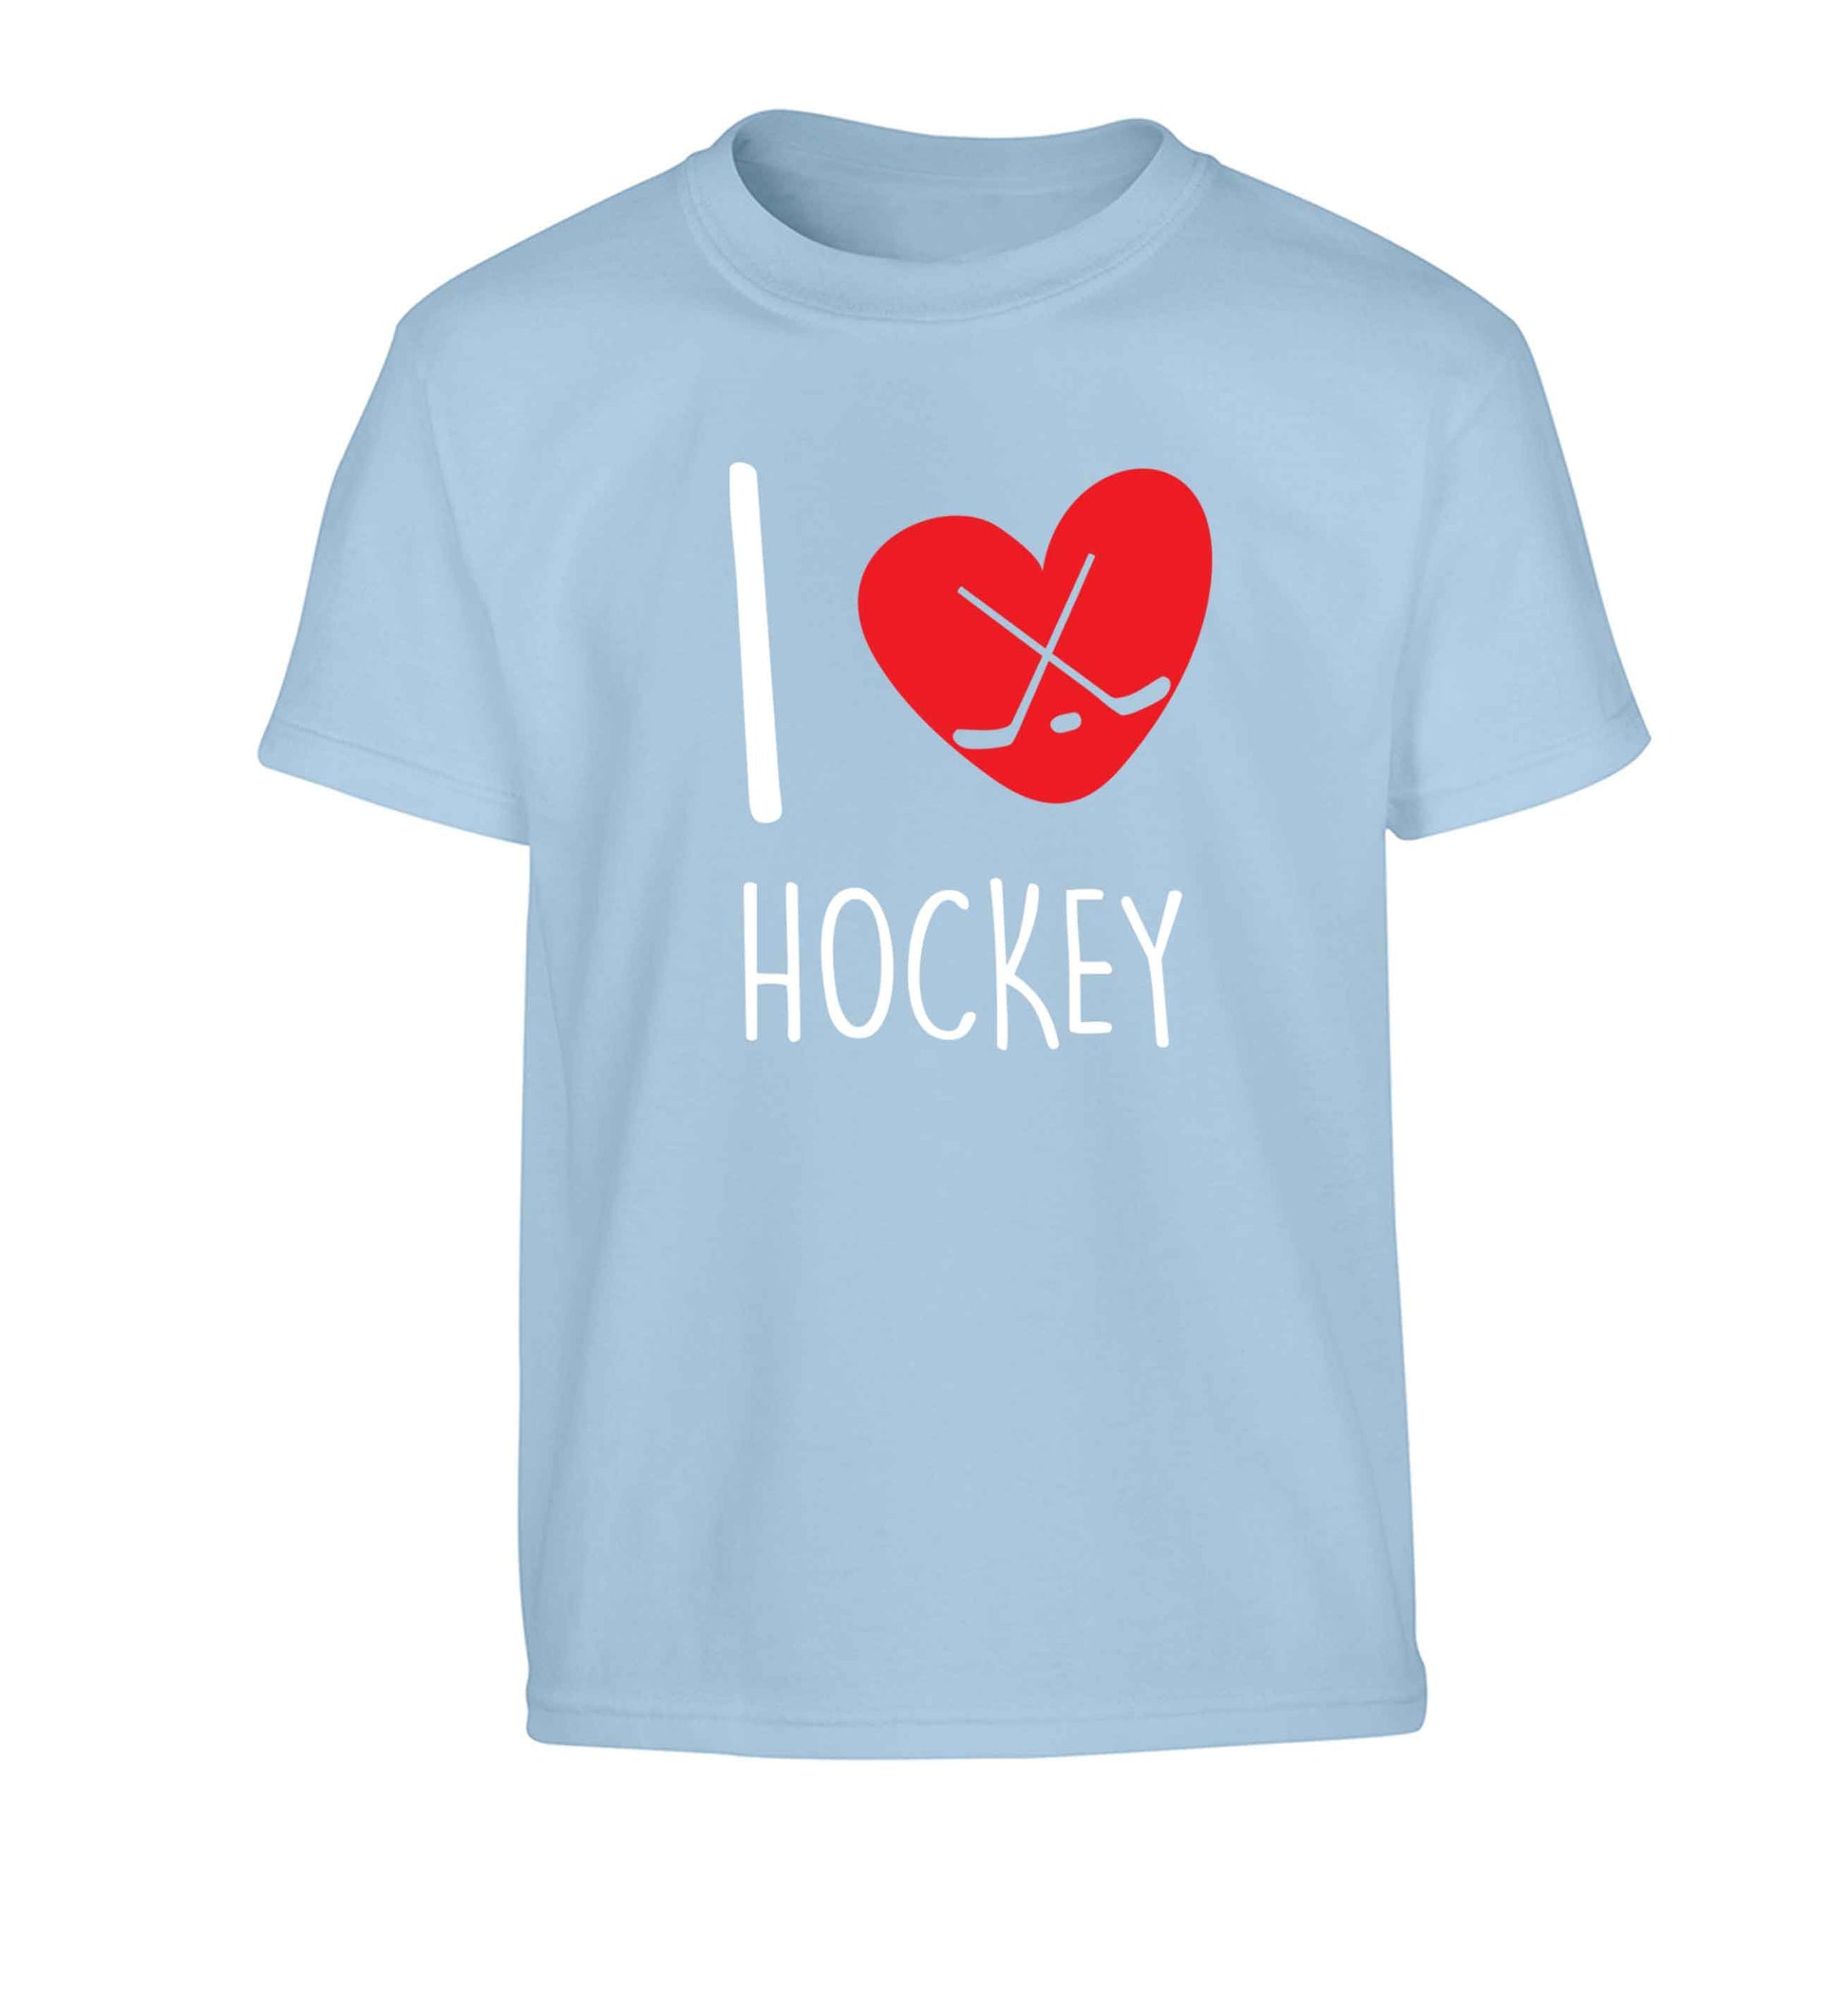 I love hockey Children's light blue Tshirt 12-13 Years